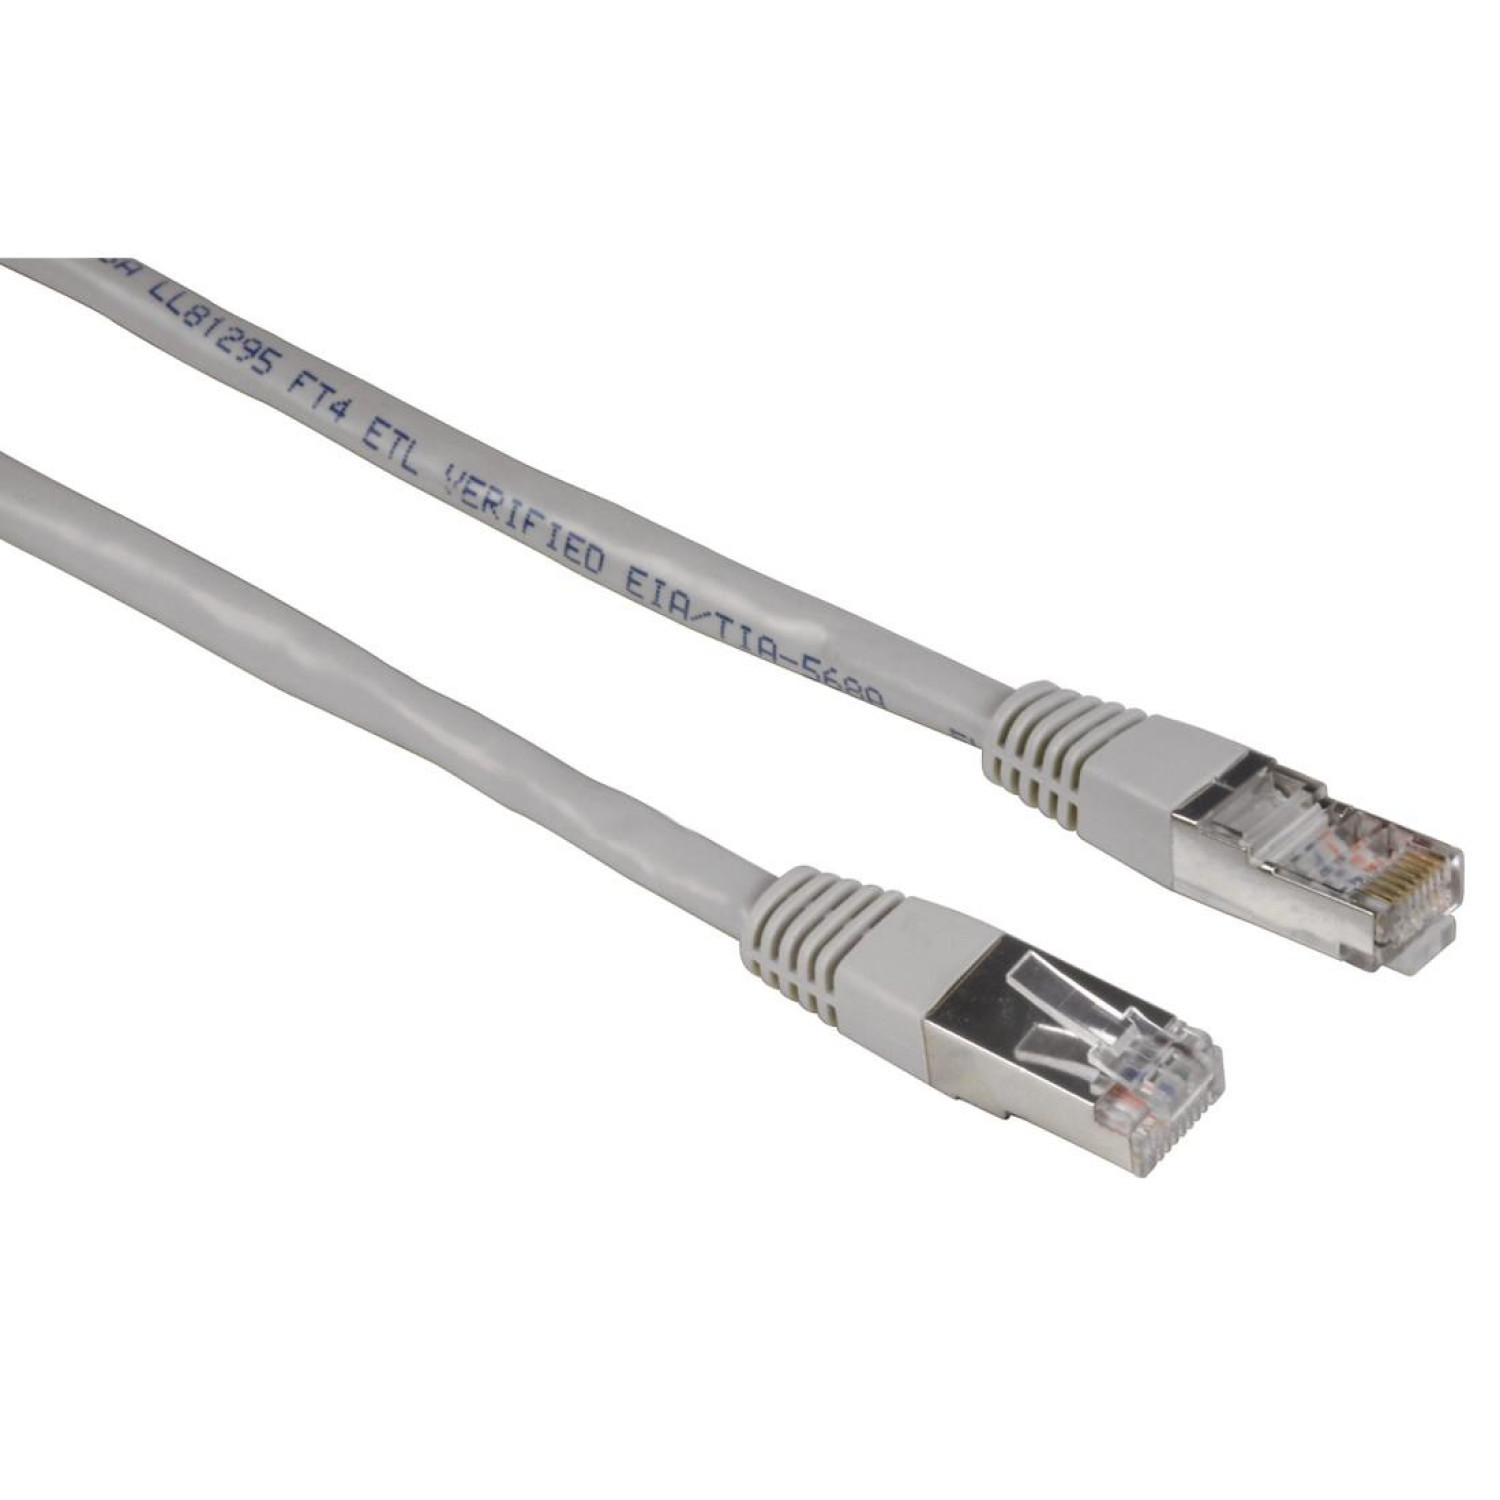 Мрежов кабел HAMA, 20141, CAT 5e, STP, RJ-45 - RJ-45, 7.5 m, Standard, Сив, булк опаковка